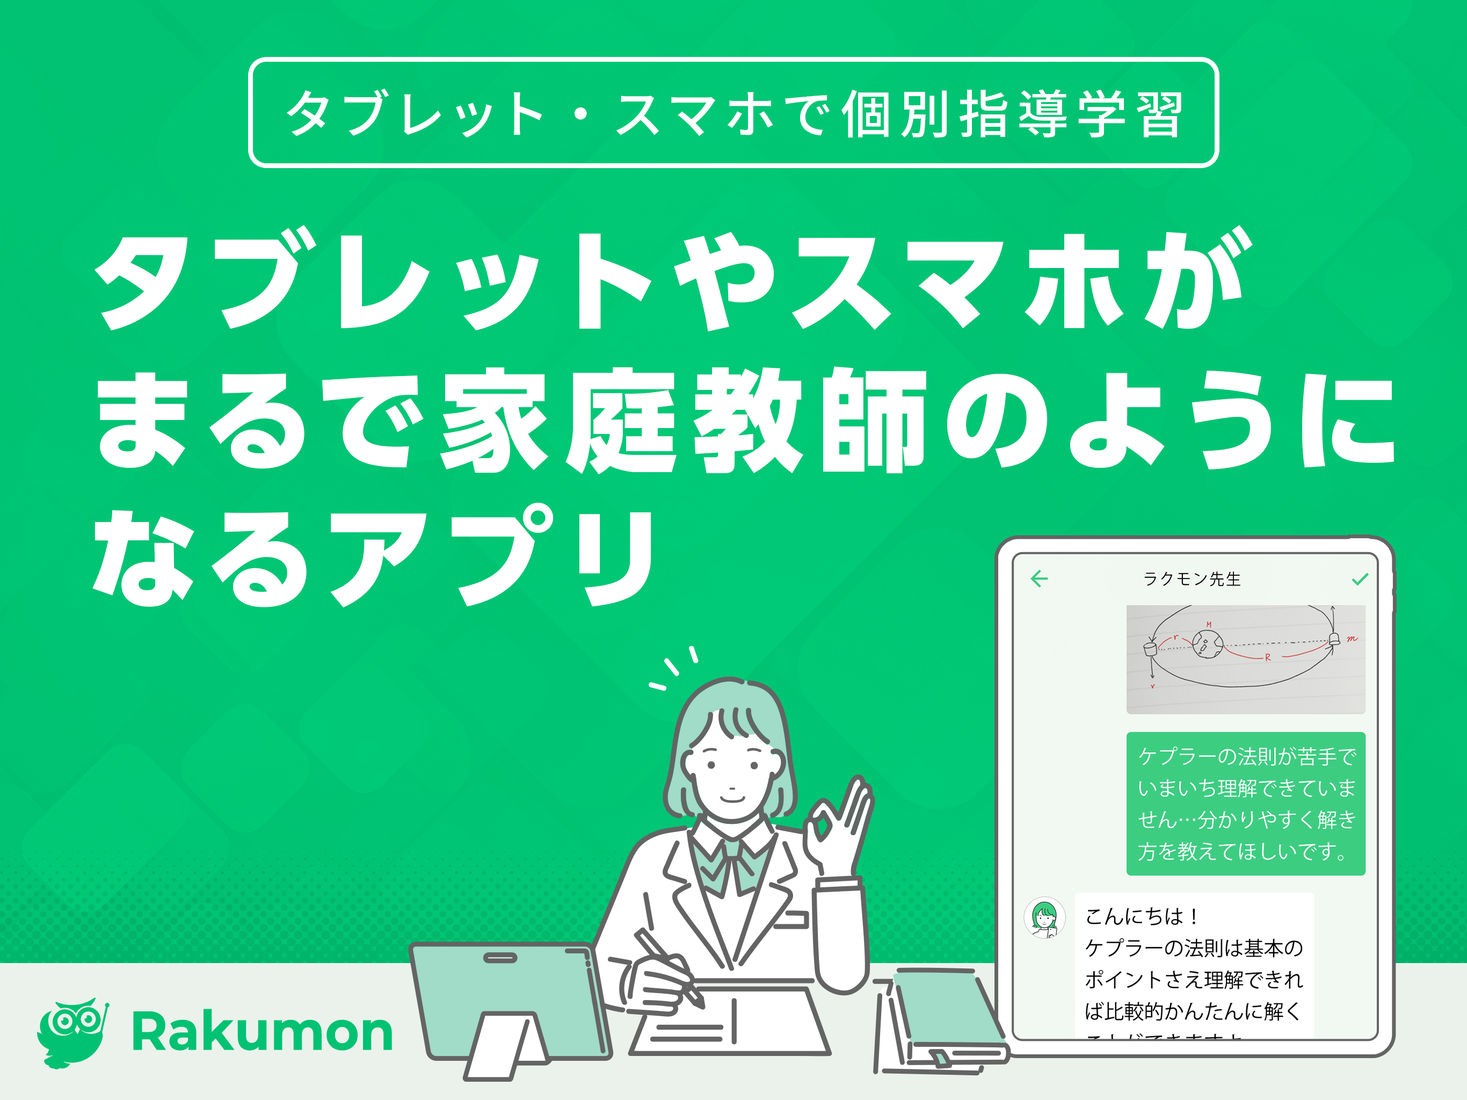 小中高生 大学受験生向け学習支援アプリ Rakumon ラクモン 登録生徒数5 000人を突破 Rakumon Inc のプレスリリース